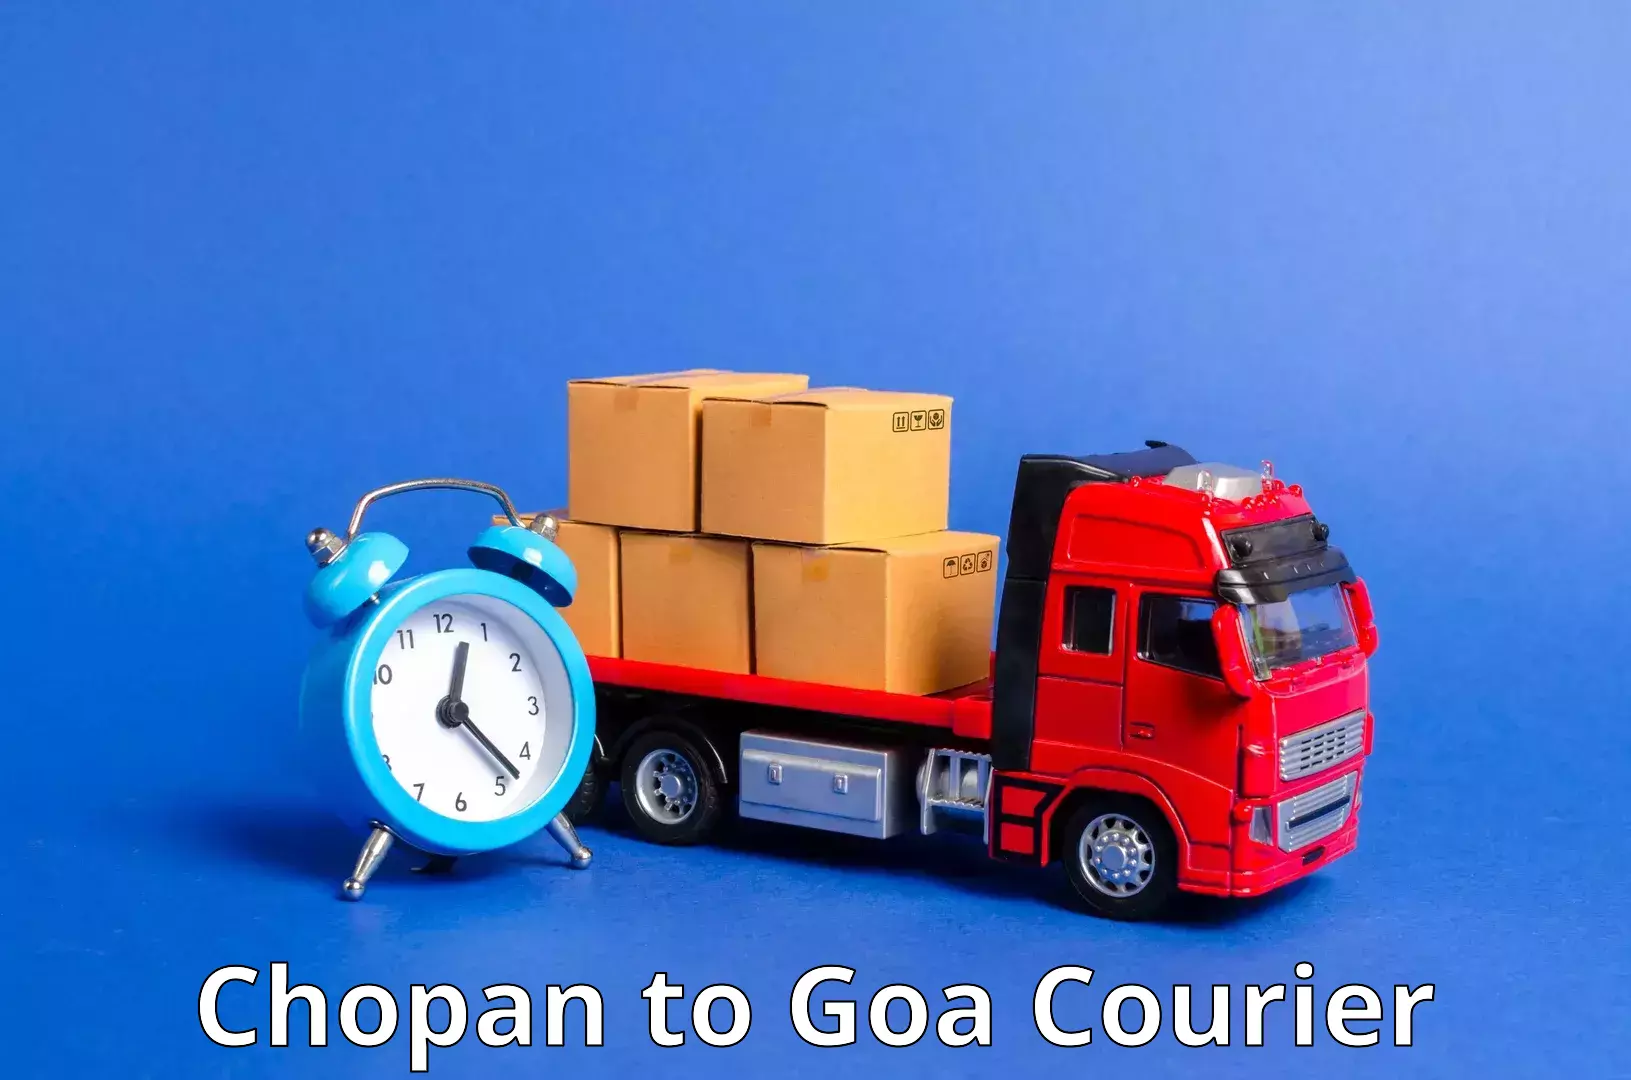 Express package handling Chopan to Goa